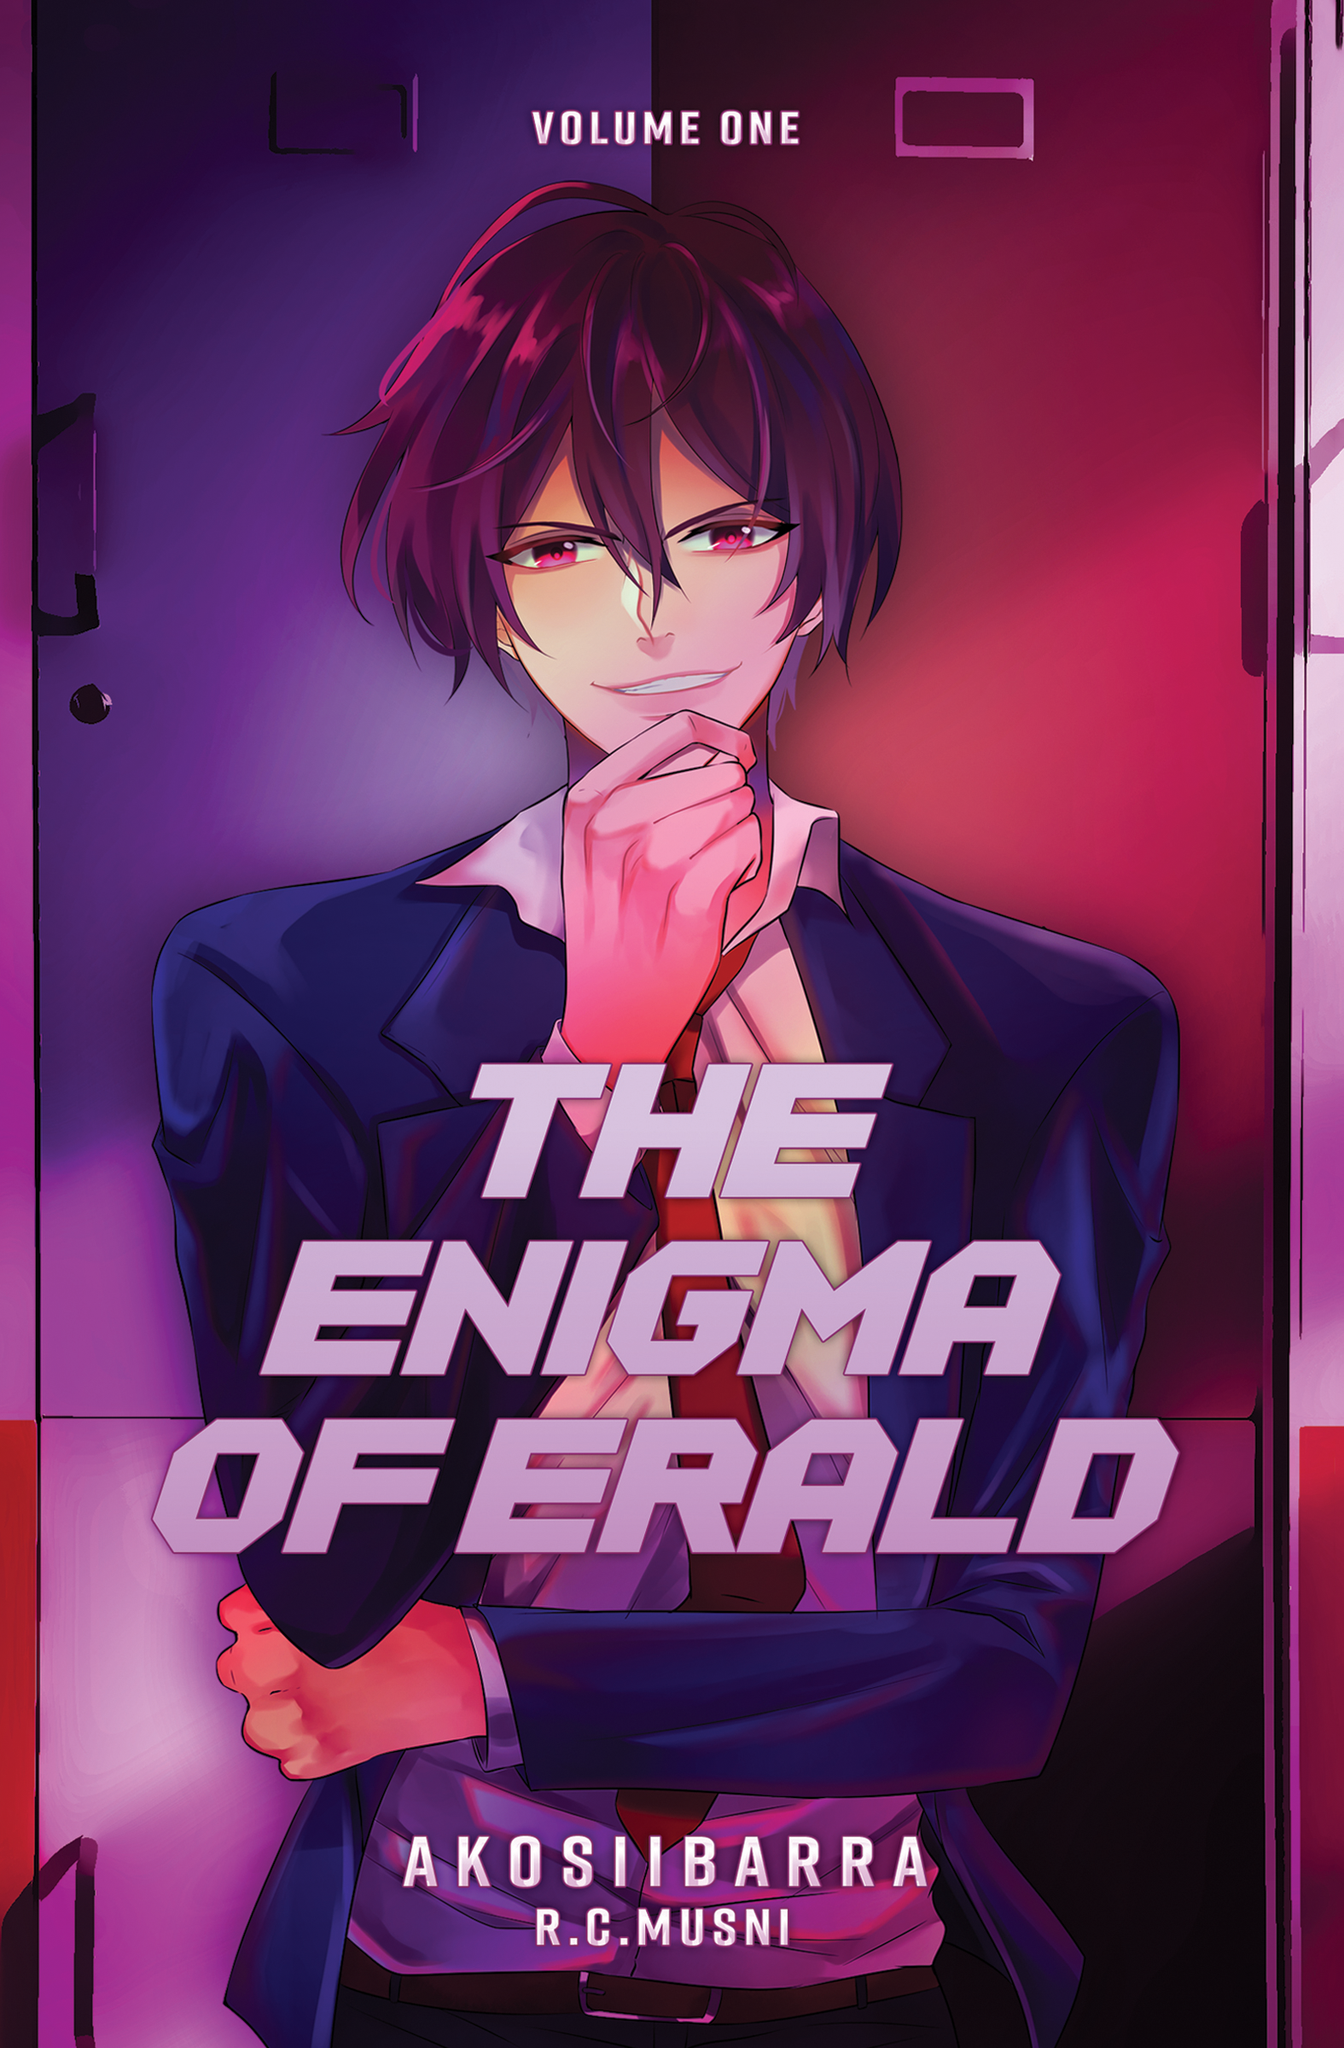 The Enigma of Erald